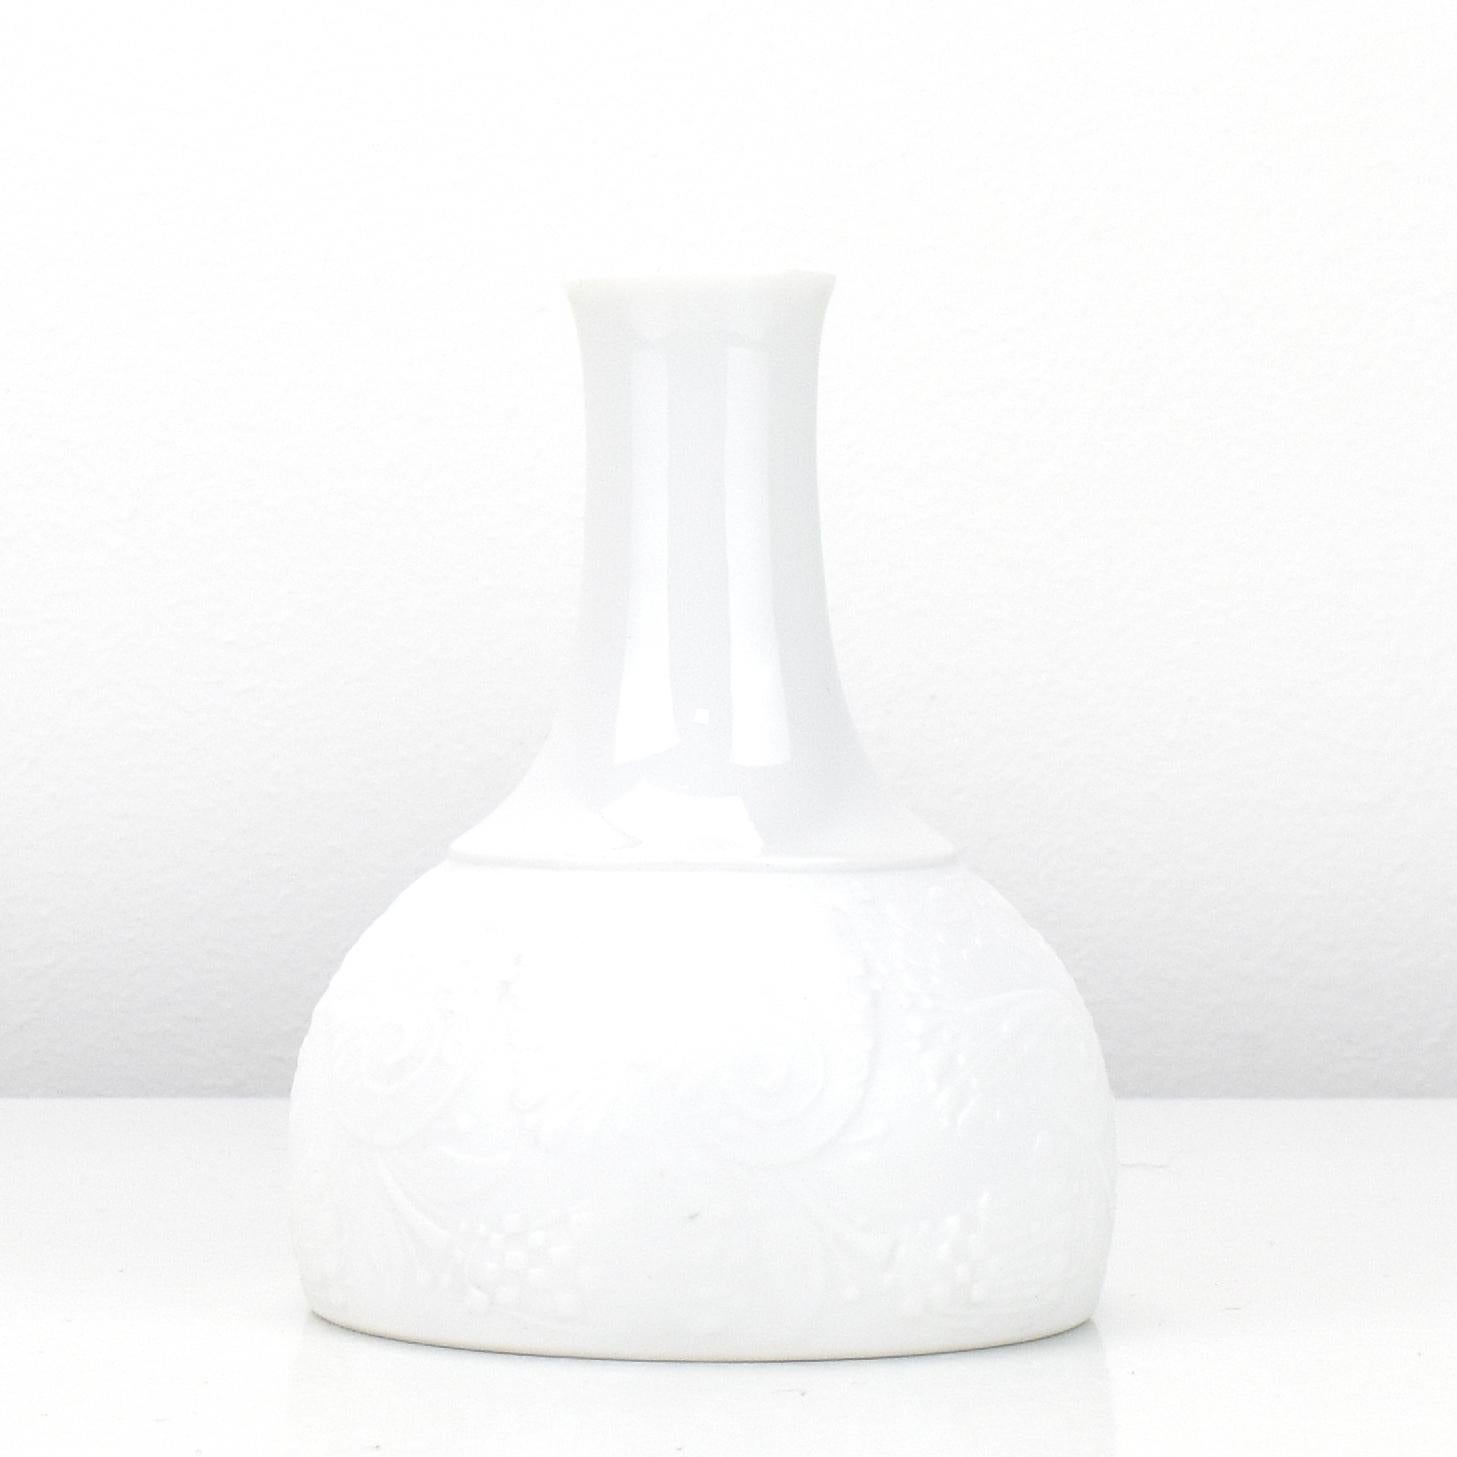 Unglazed Björn Wiinblad Vase White Porcelain Rosenthal Studio-line Germany Dove Pattern For Sale